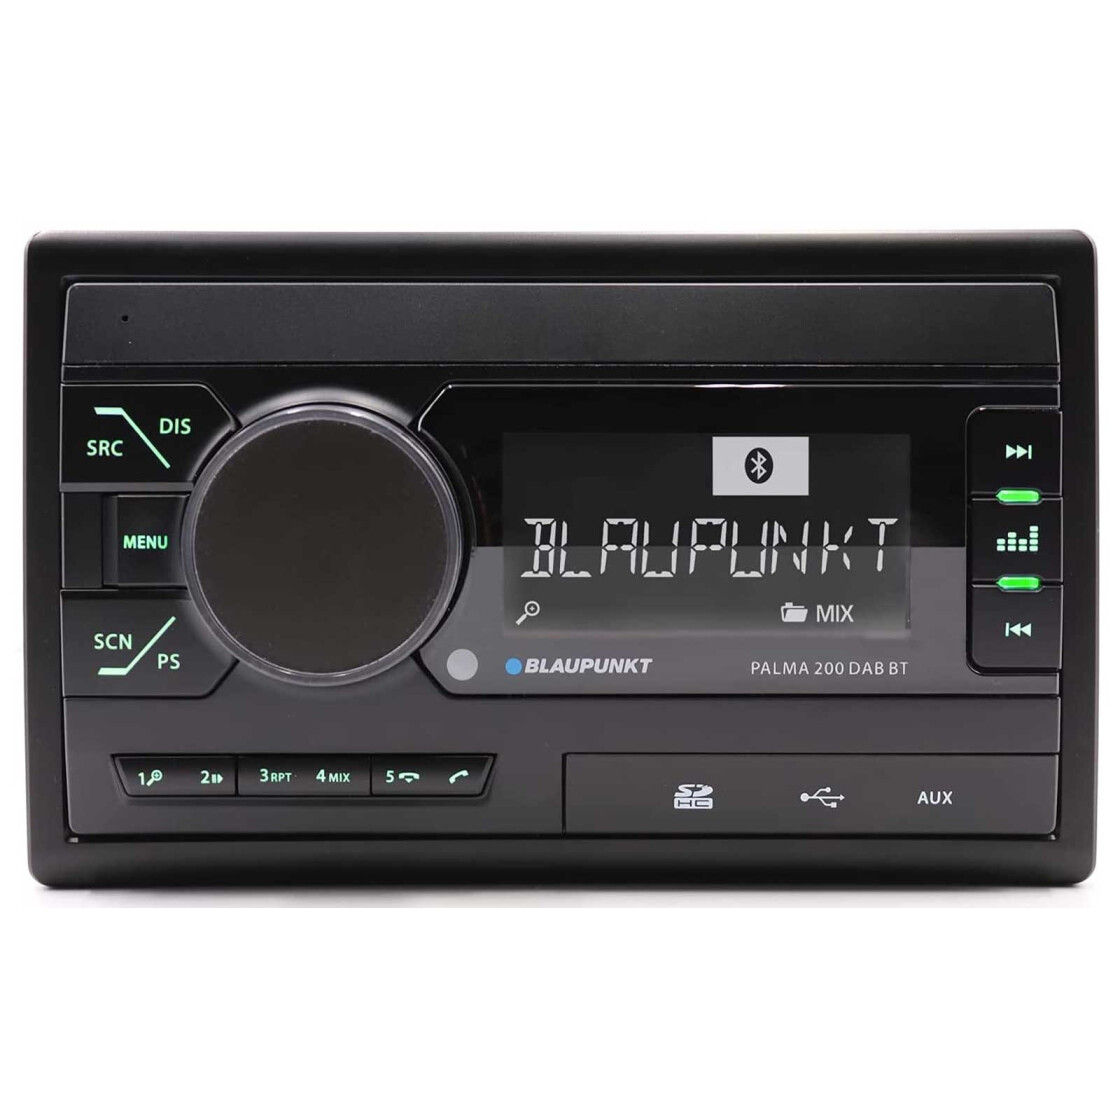 Blaupunkt Frankfurt RCM 82 DAB - MP3-Autoradio mit Bluetooth / DAB